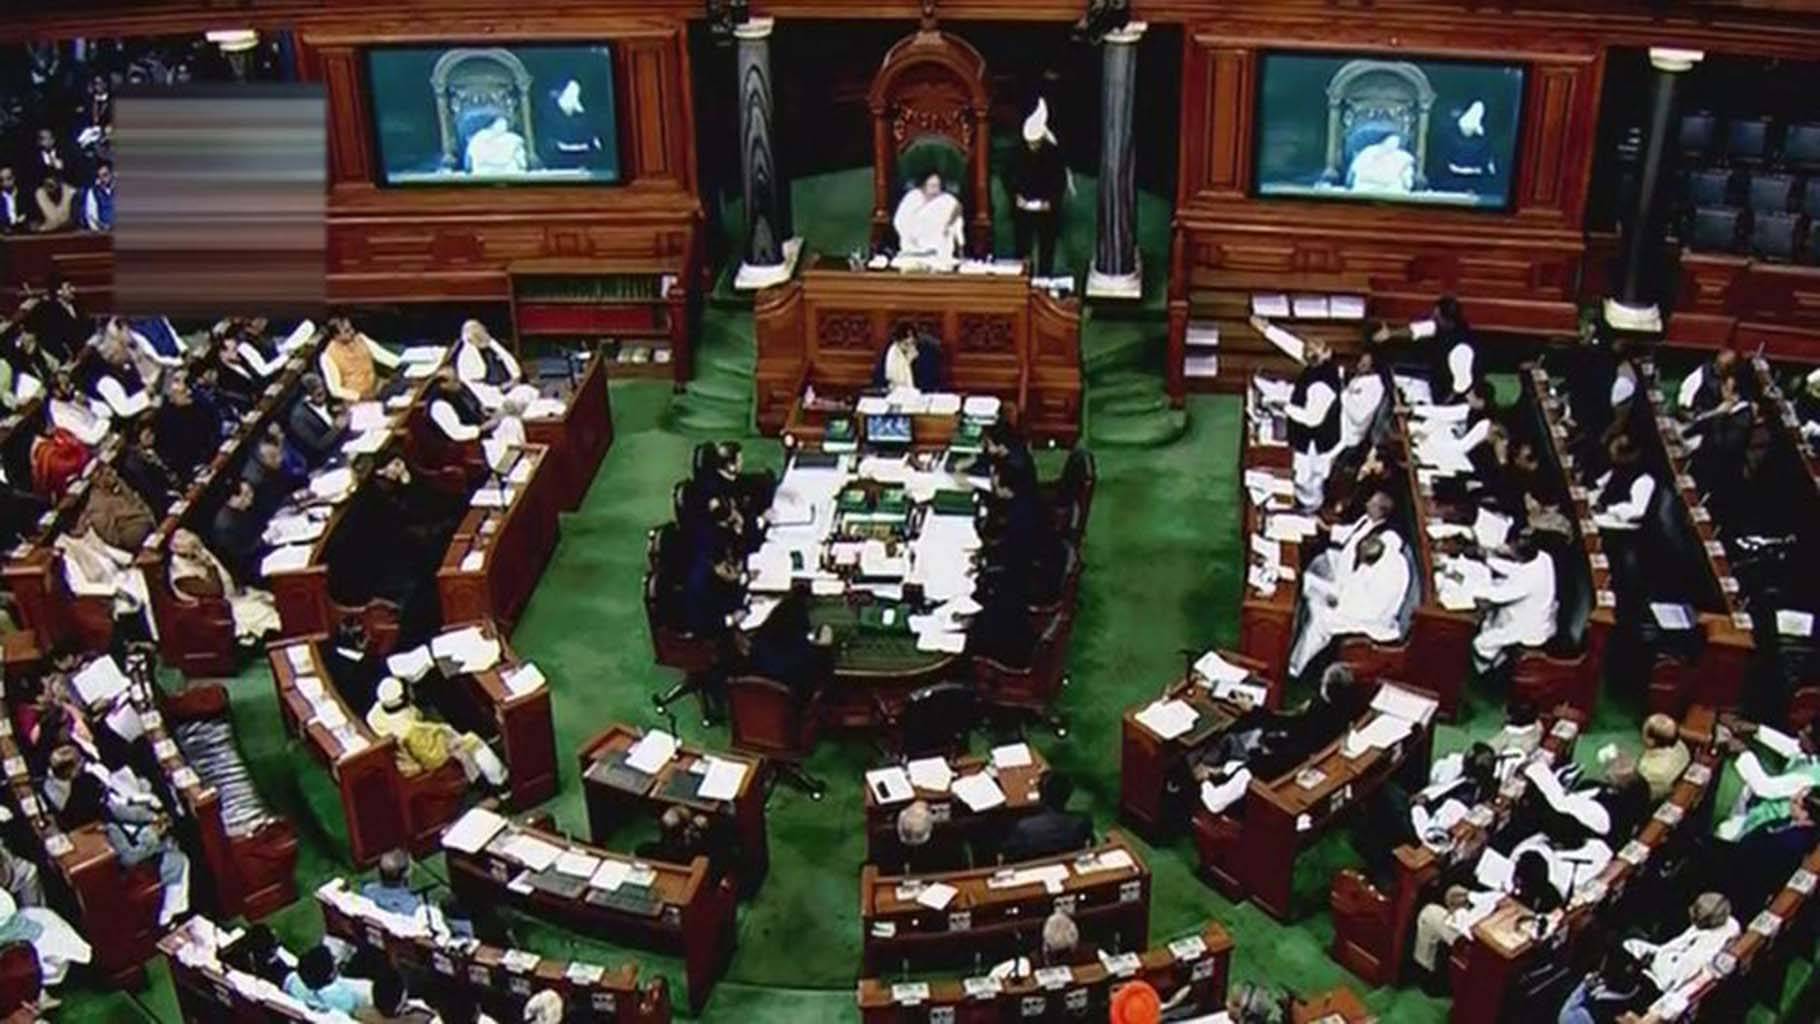 Lok Sabha passes Electoral reforms bill that links Aadhaar to voter ID